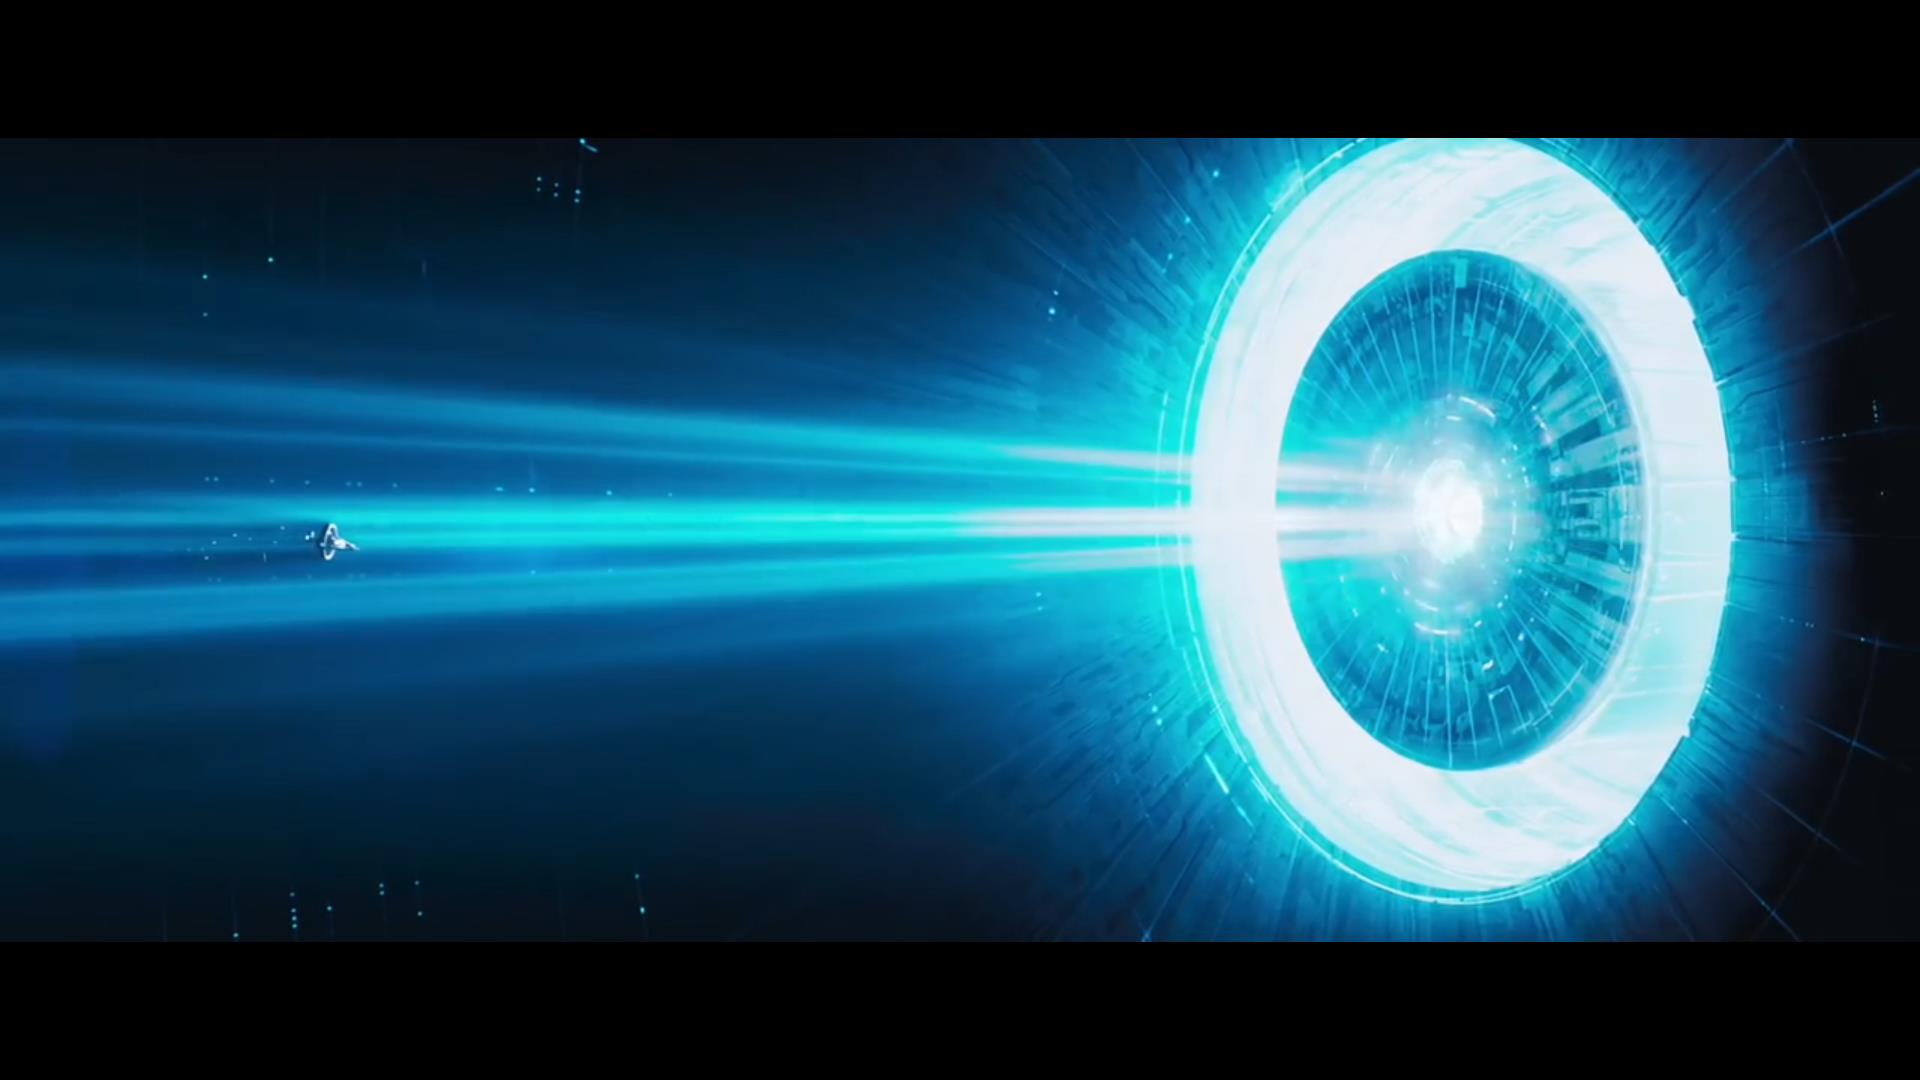 《超光速飞行》-宇宙探险科幻短片FTL